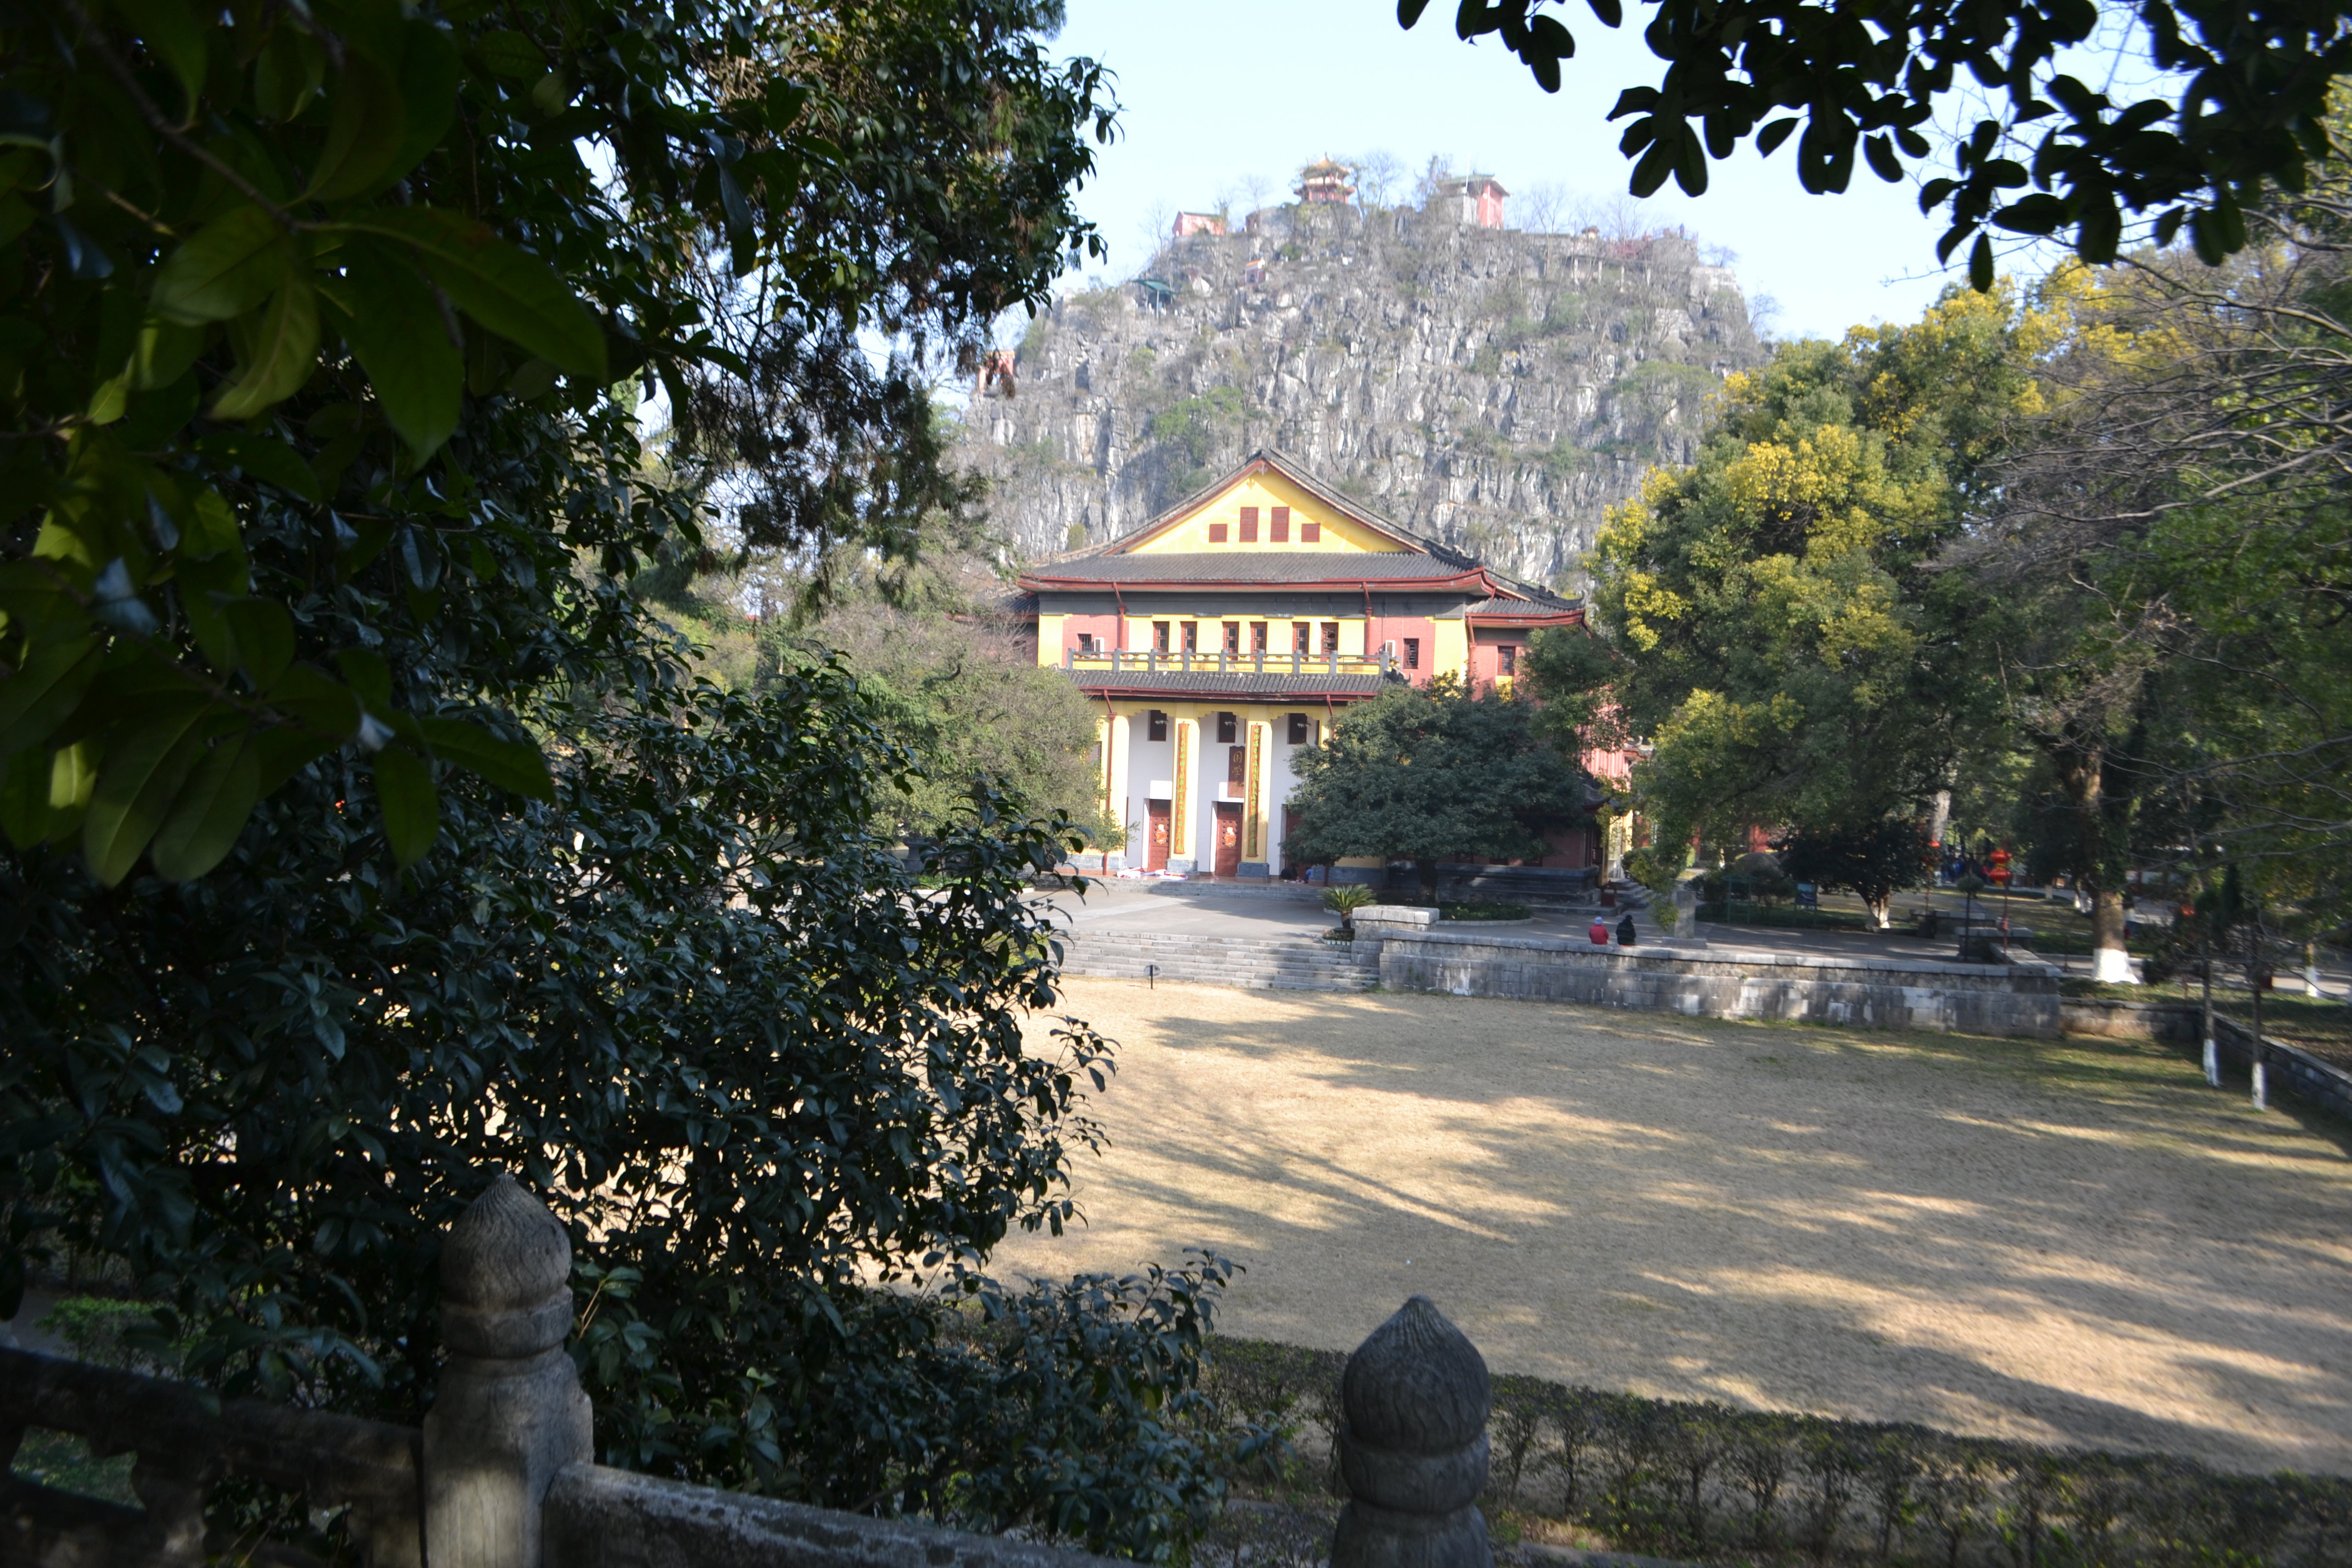 【携程攻略】桂林独秀峰王城景区景点,几百年历史的明朝王府，值得游览